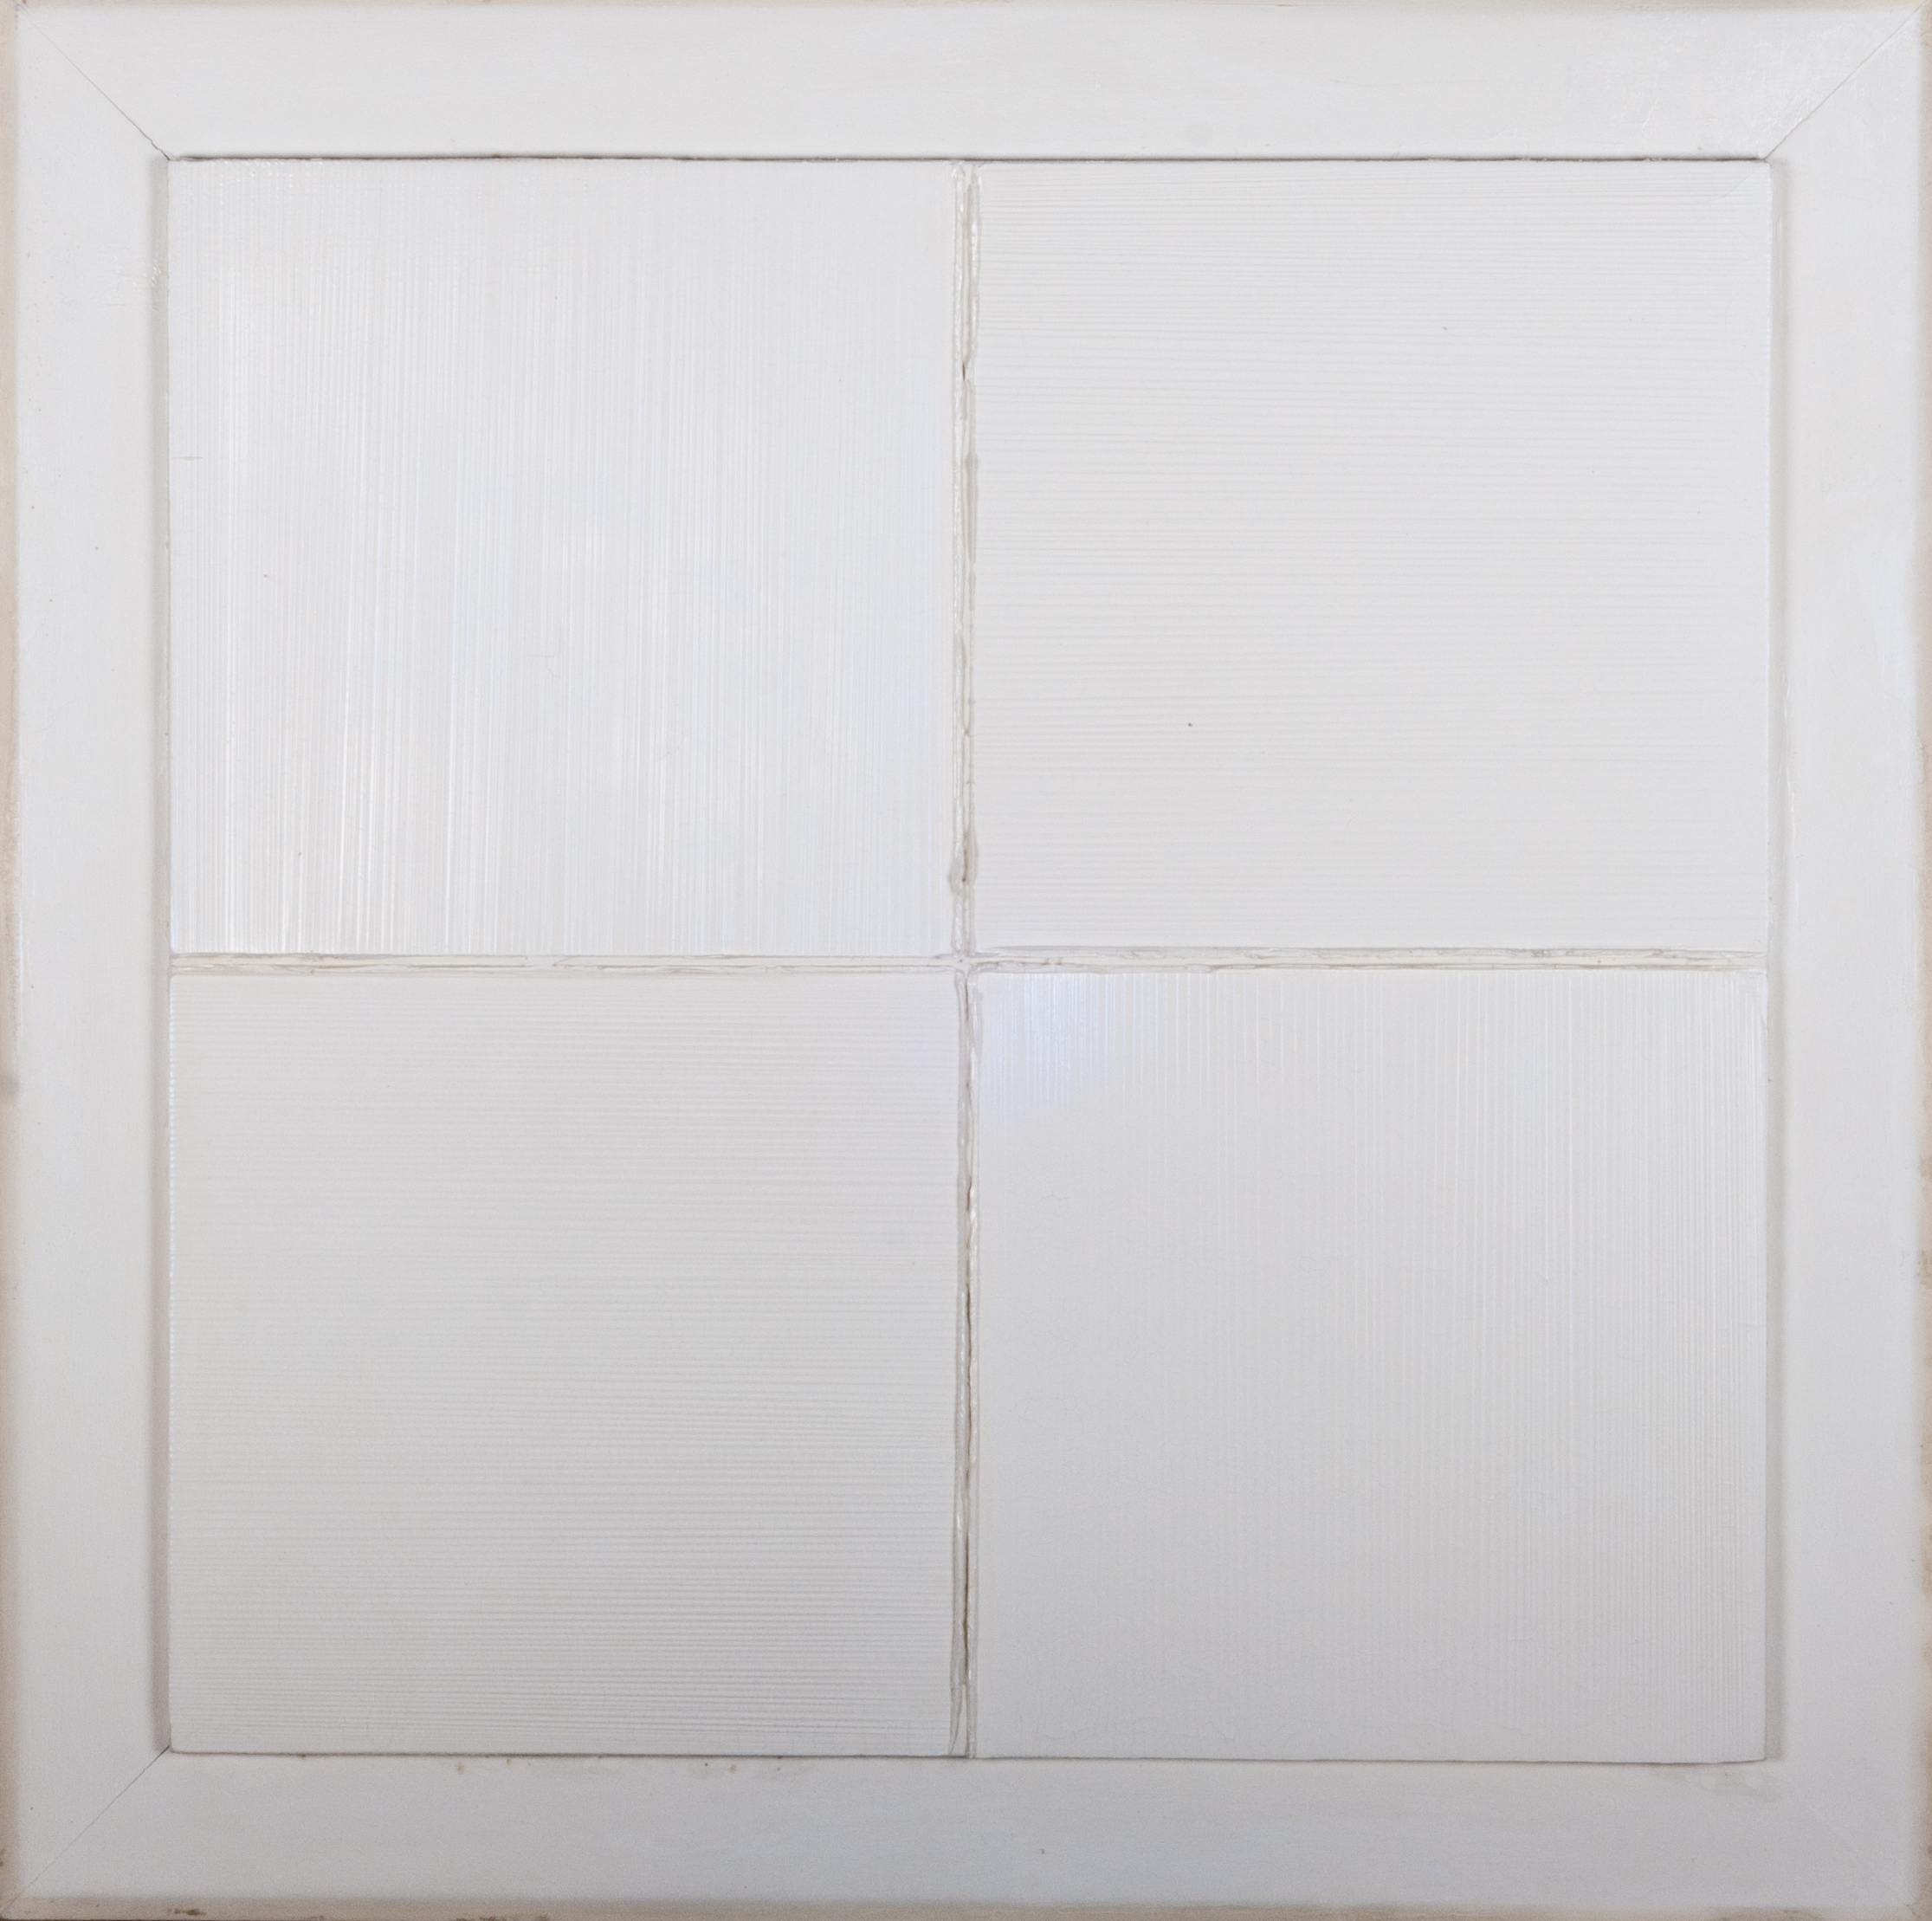 Vincentiu Grigorescu - Finestra, 1972-1974, oil on wooden panel, 72 x 72 cm